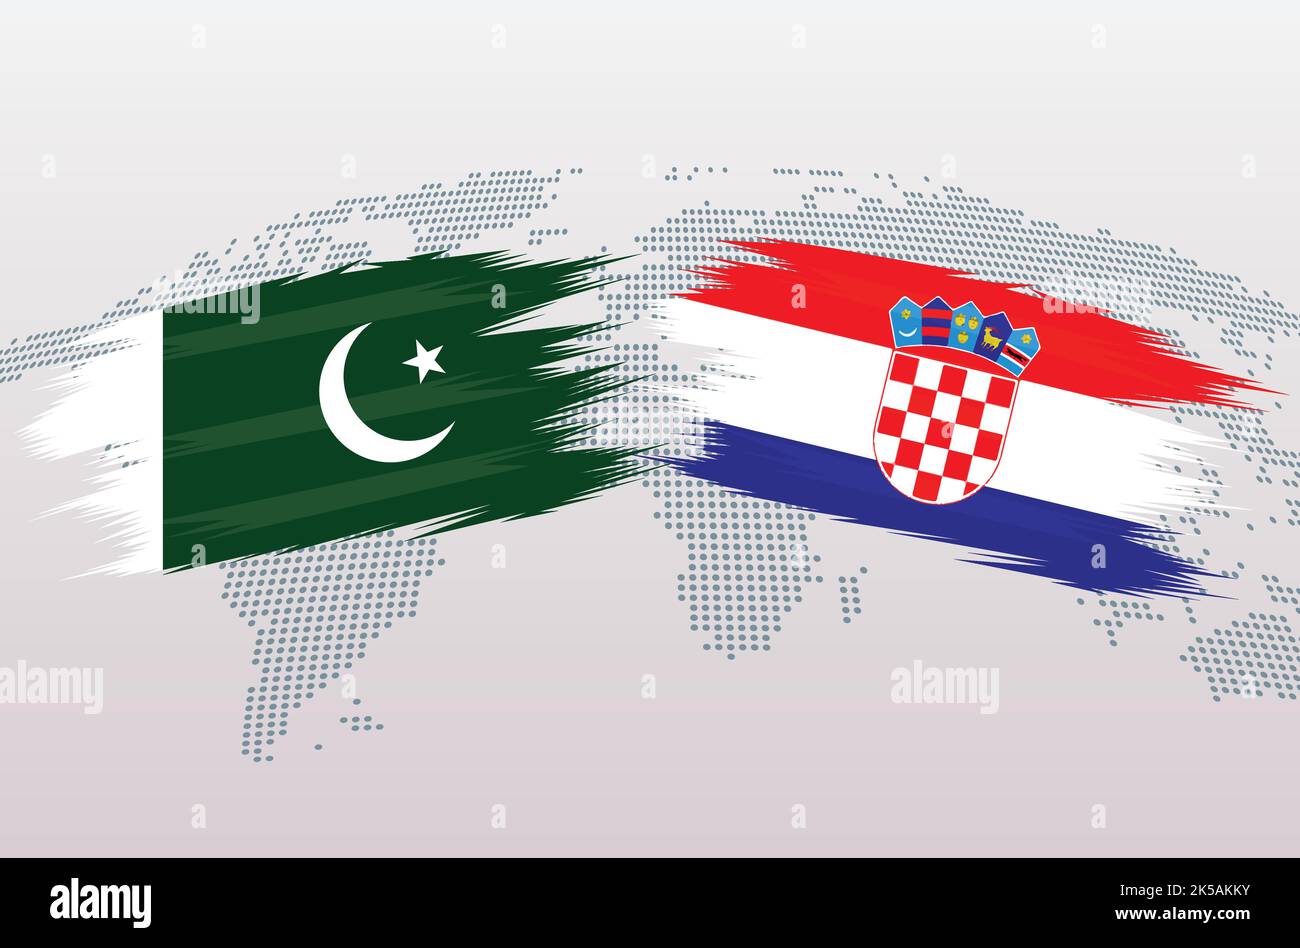 Bandiere Pakistan vs Croazia. Bandiere della Repubblica islamica del Pakistan contro Croazia, isolate su sfondo grigio della mappa del mondo. Illustrazione vettoriale. Illustrazione Vettoriale